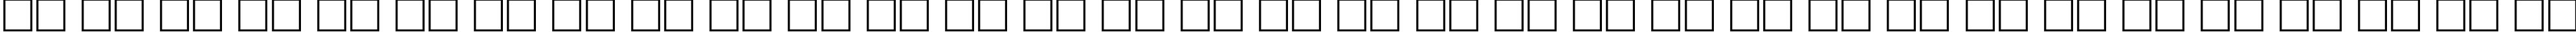 Пример написания русского алфавита шрифтом Dragonwick Regular